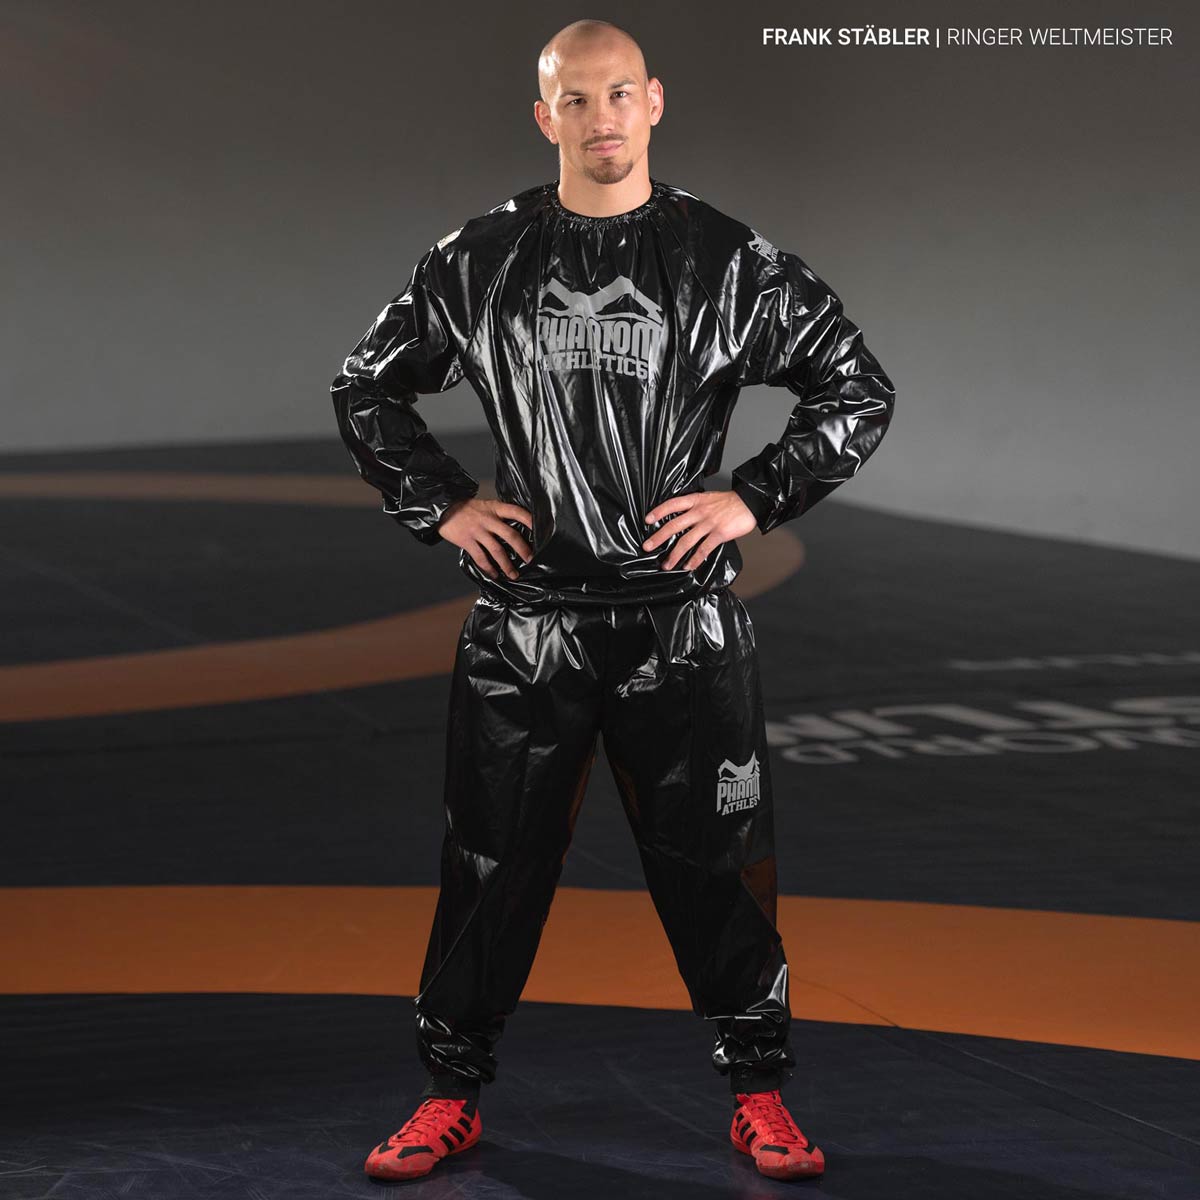 UWW Ringer Weltmeister Frank Stäbler beim Gewichtmachen mit dem Phantom Nomax Schwitzanzug